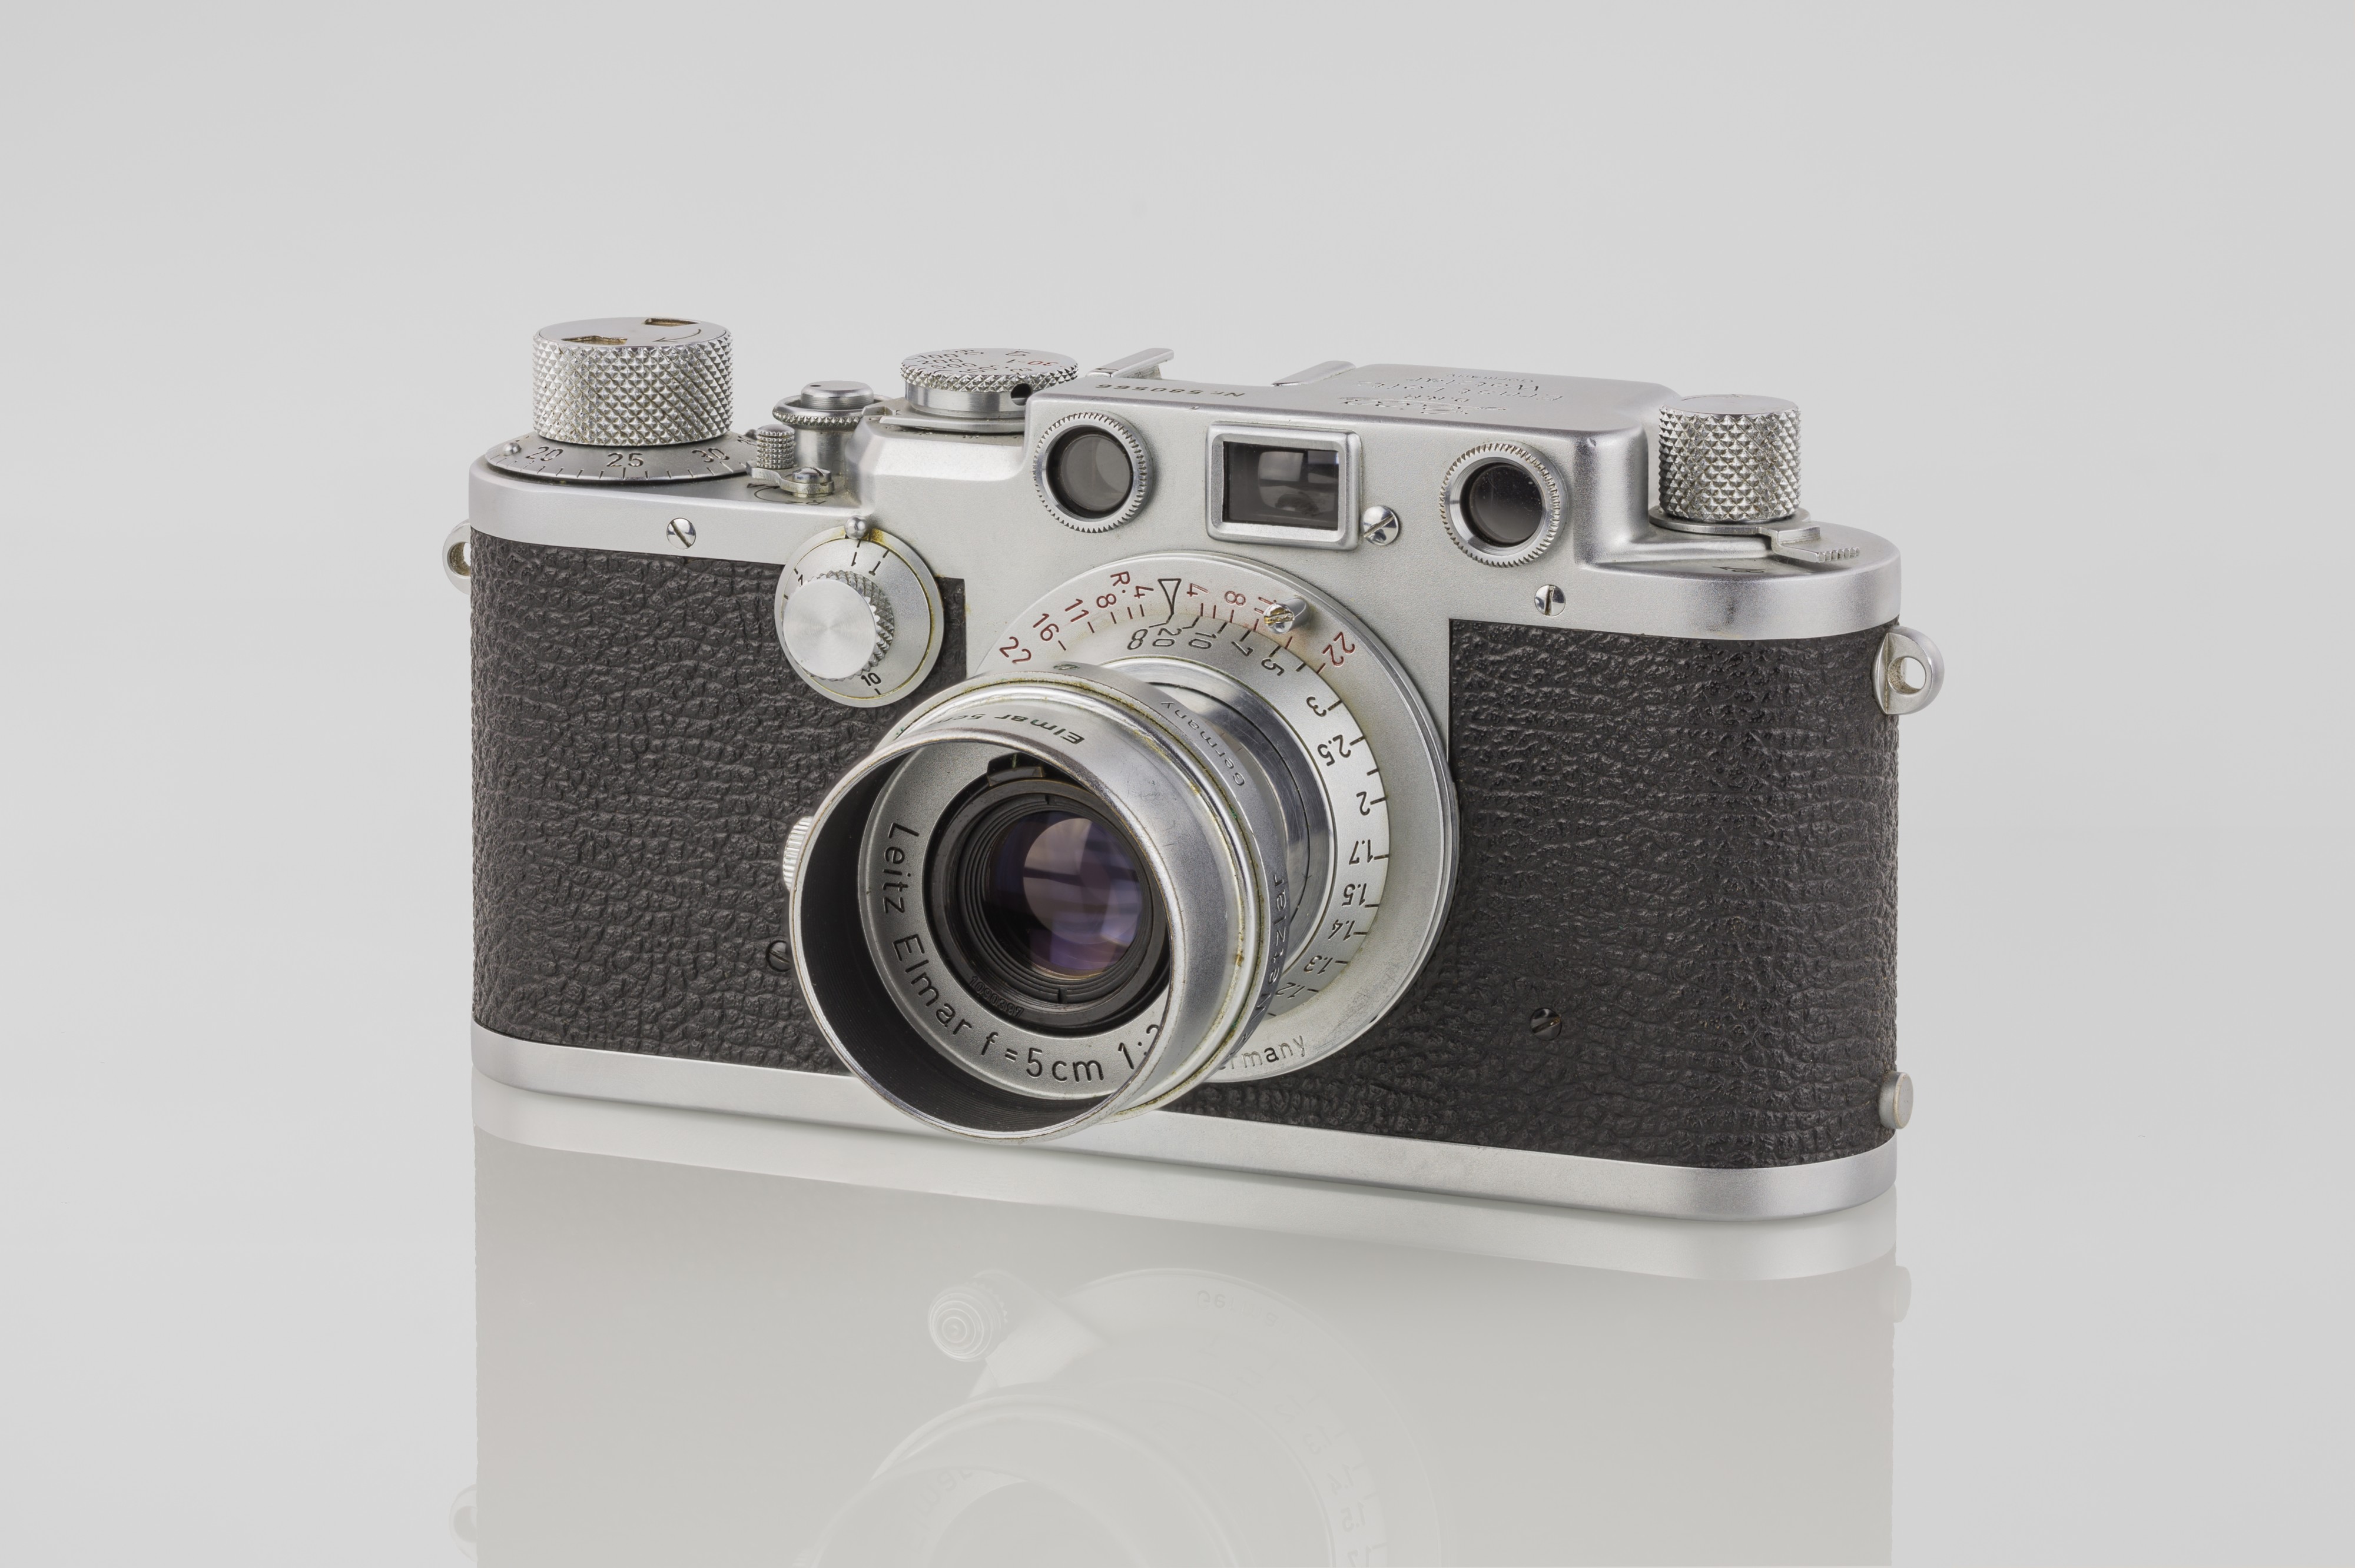 LEI0440 Leica IIIf chrom - Sn. 580566 1951-52-M39 Blitzsynchron front view-6593 hf-